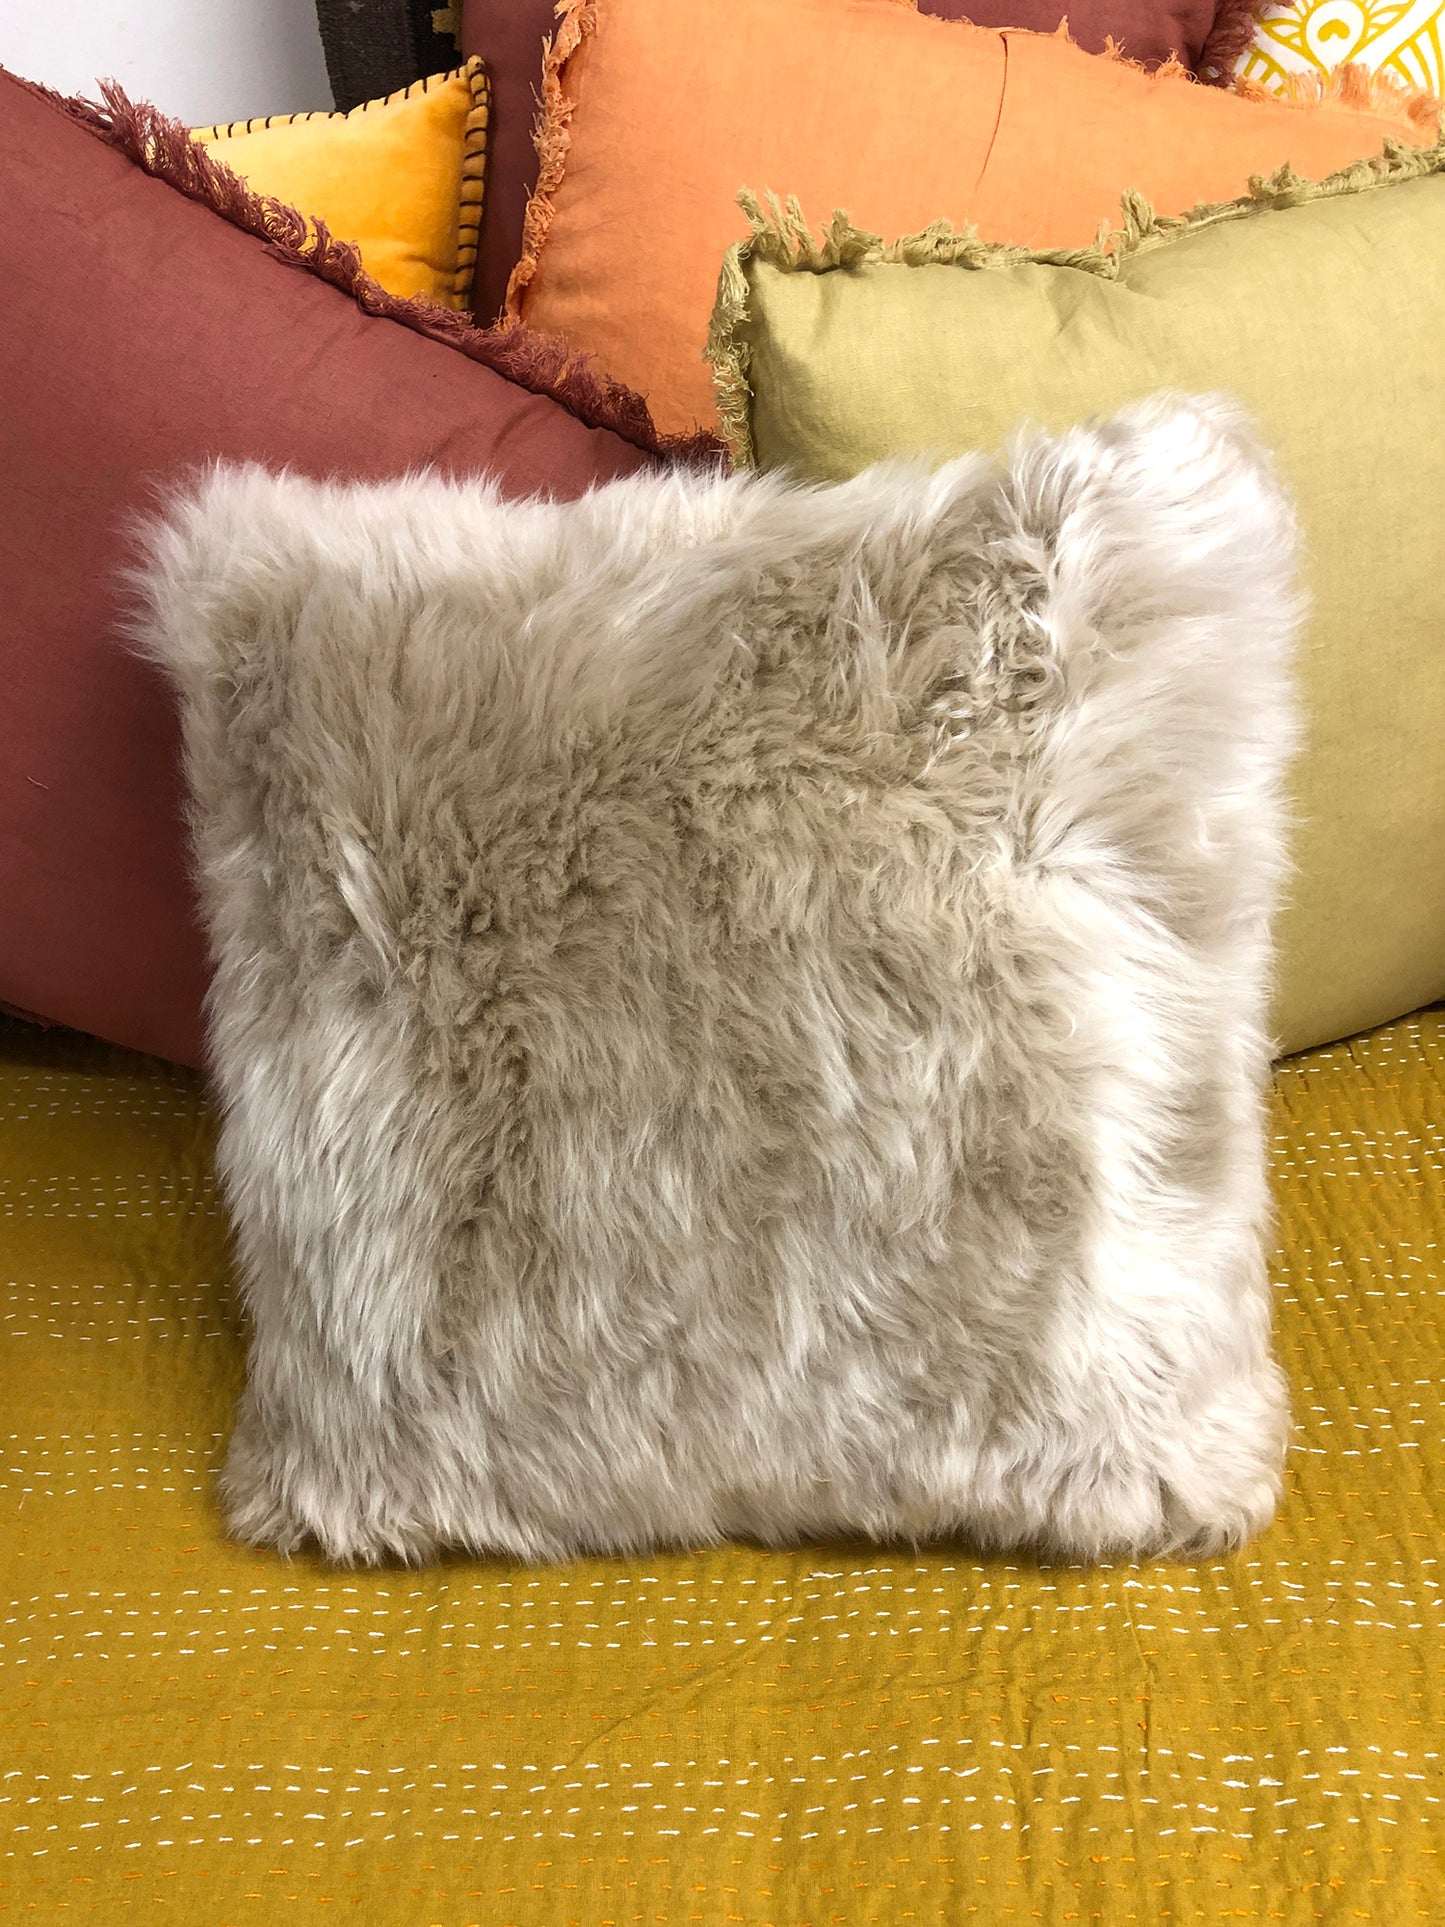 Sheep skin cushion